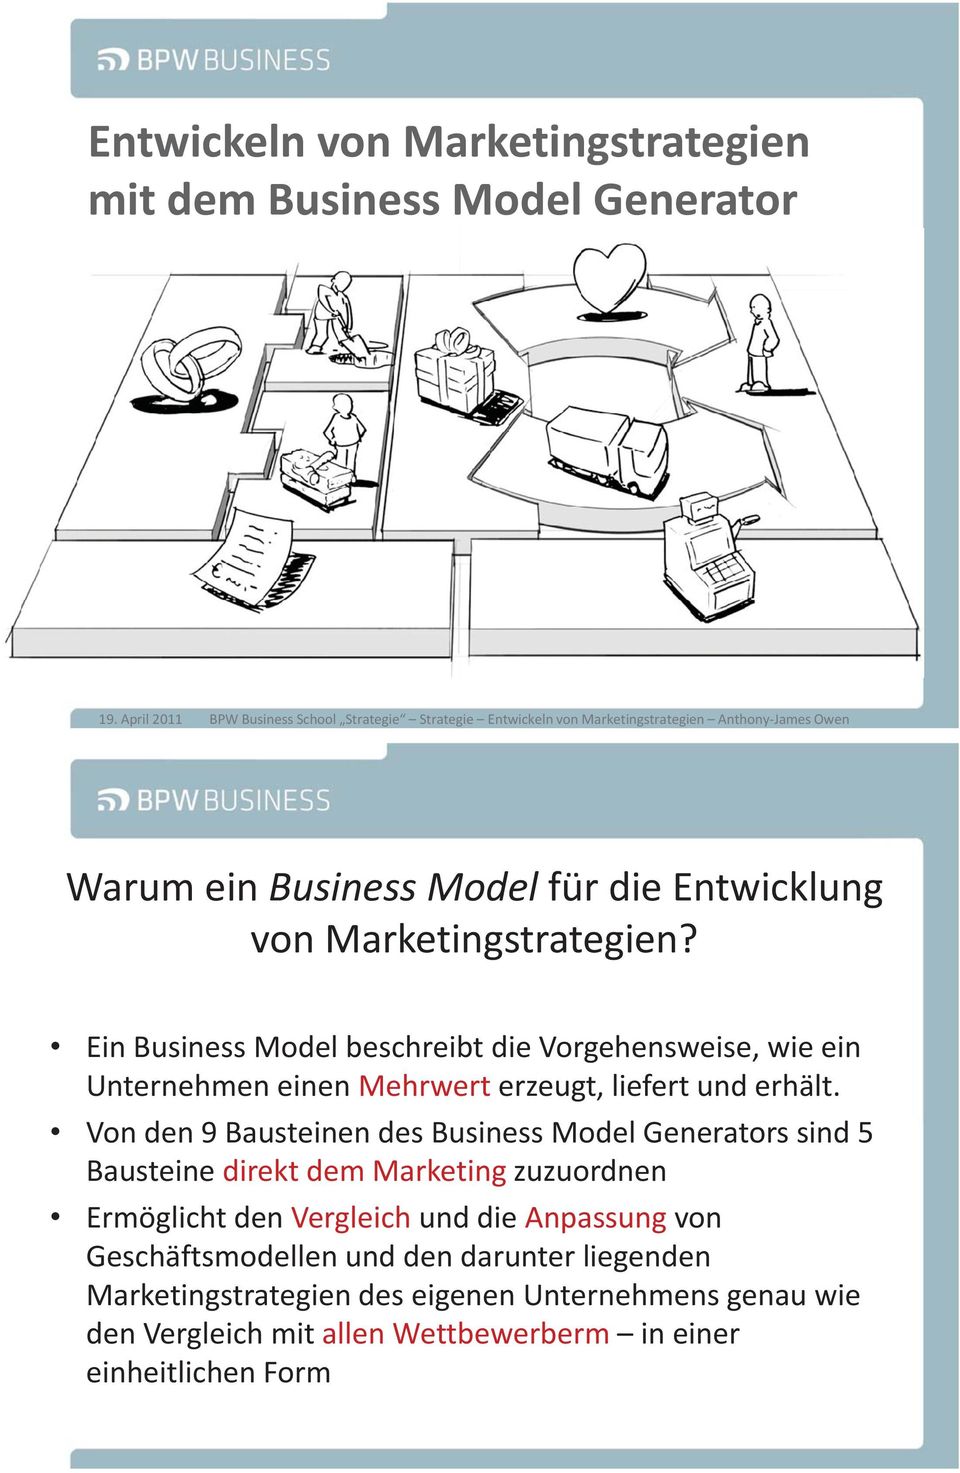 Marketingstrategien? Ein Business Model beschreibt die Vorgehensweise, wie ein Unternehmen einen Mehrwert erzeugt, liefert und erhält.